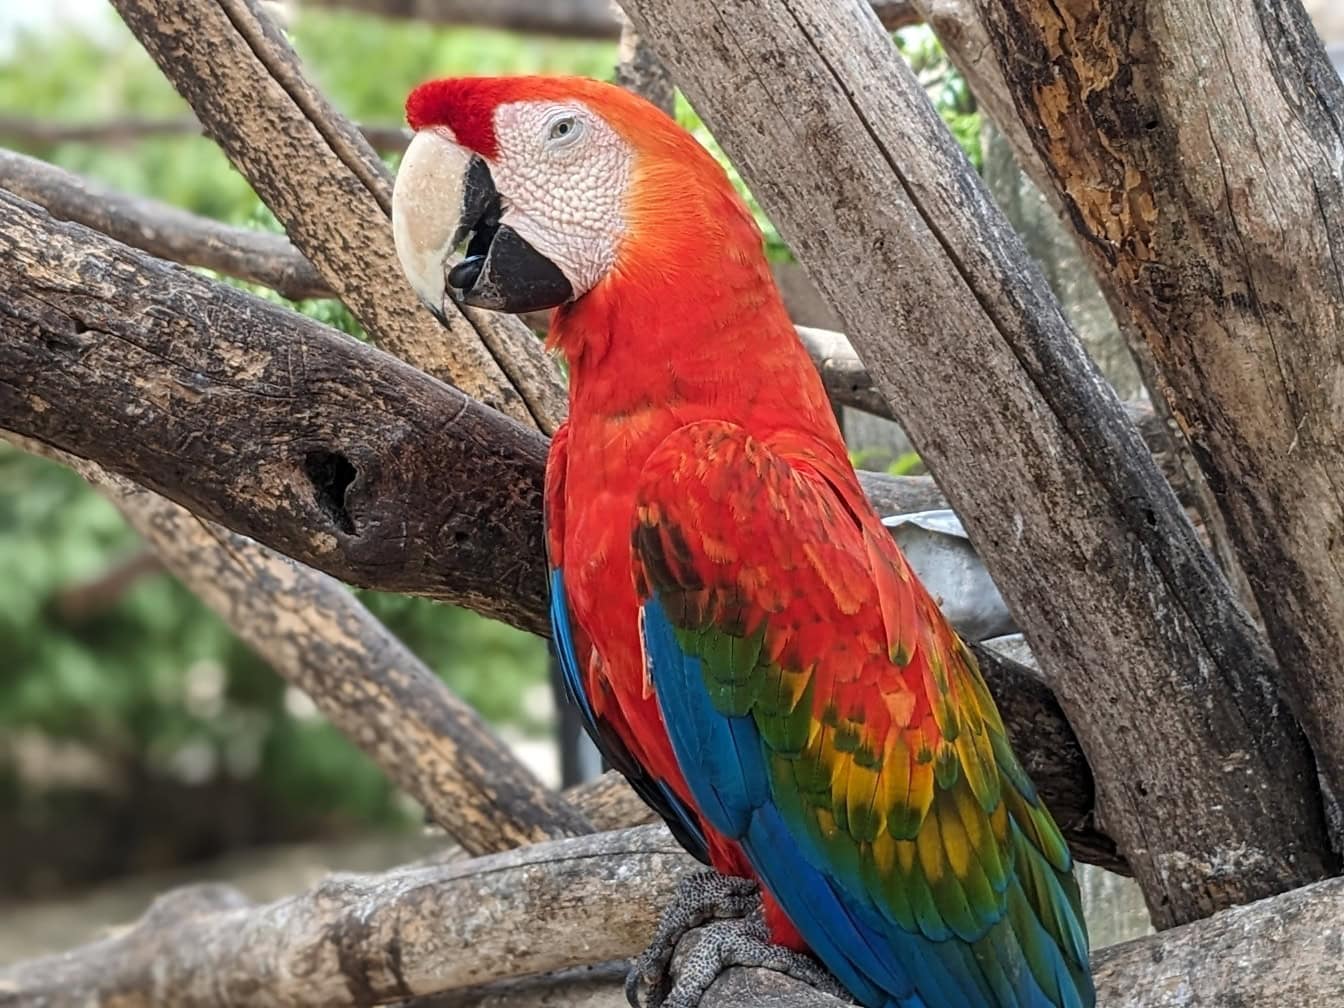 나뭇가지에 매달린 주홍색 금강앵무 앵무새 (Ara macao) 아메리카 대륙의 열대우림에 서식하는 크고 이국적인 신열대 앵무새입니다